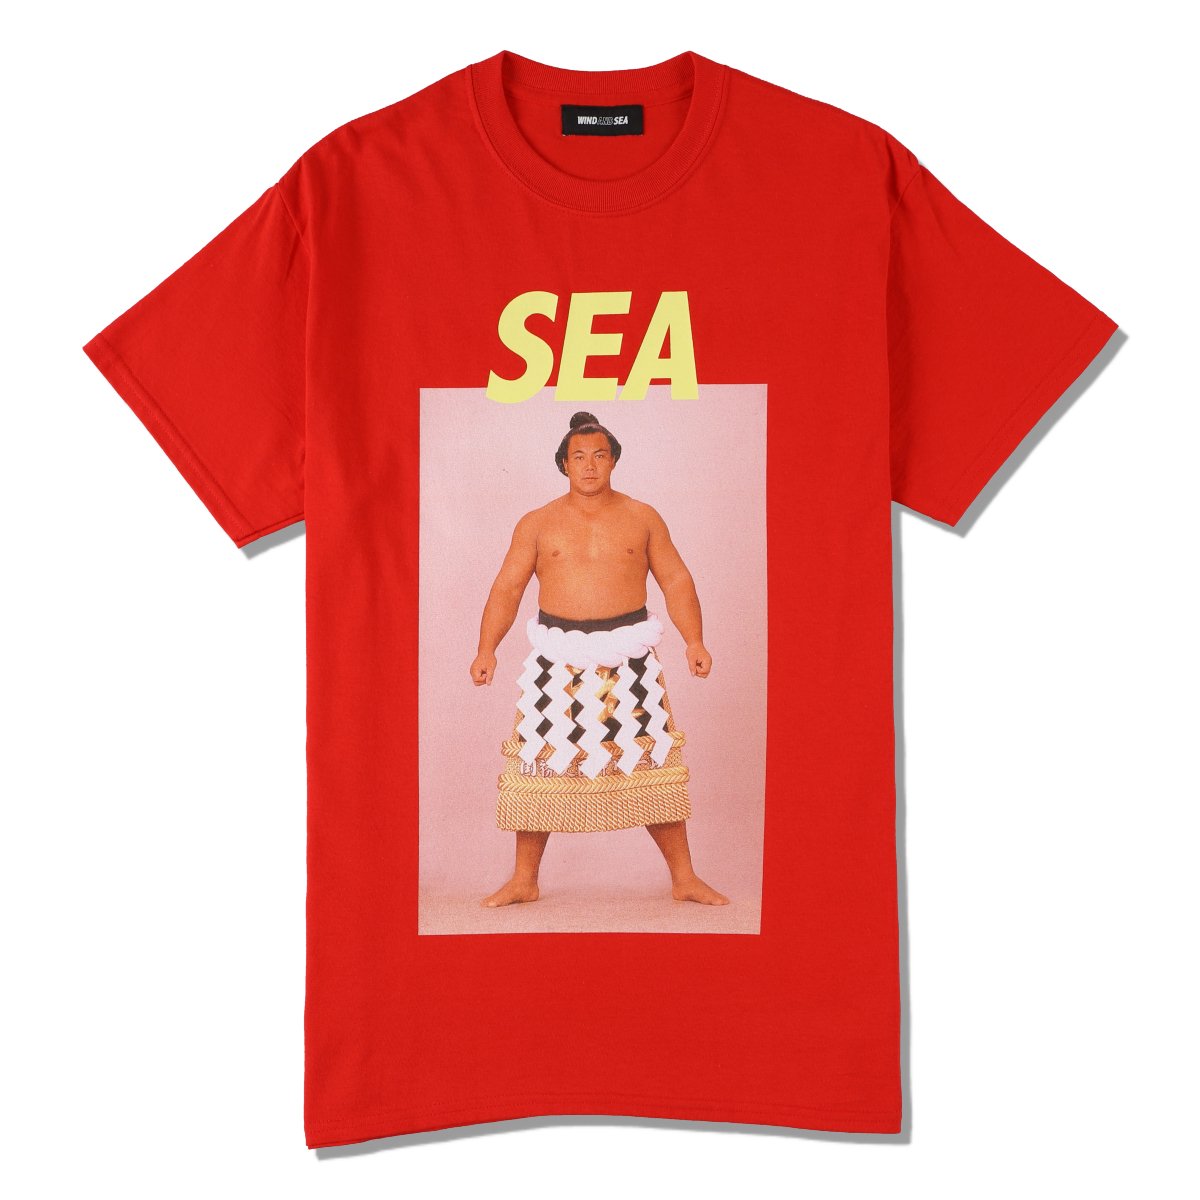 【即完売商品】【新品未使用】wind and sea Tシャツ